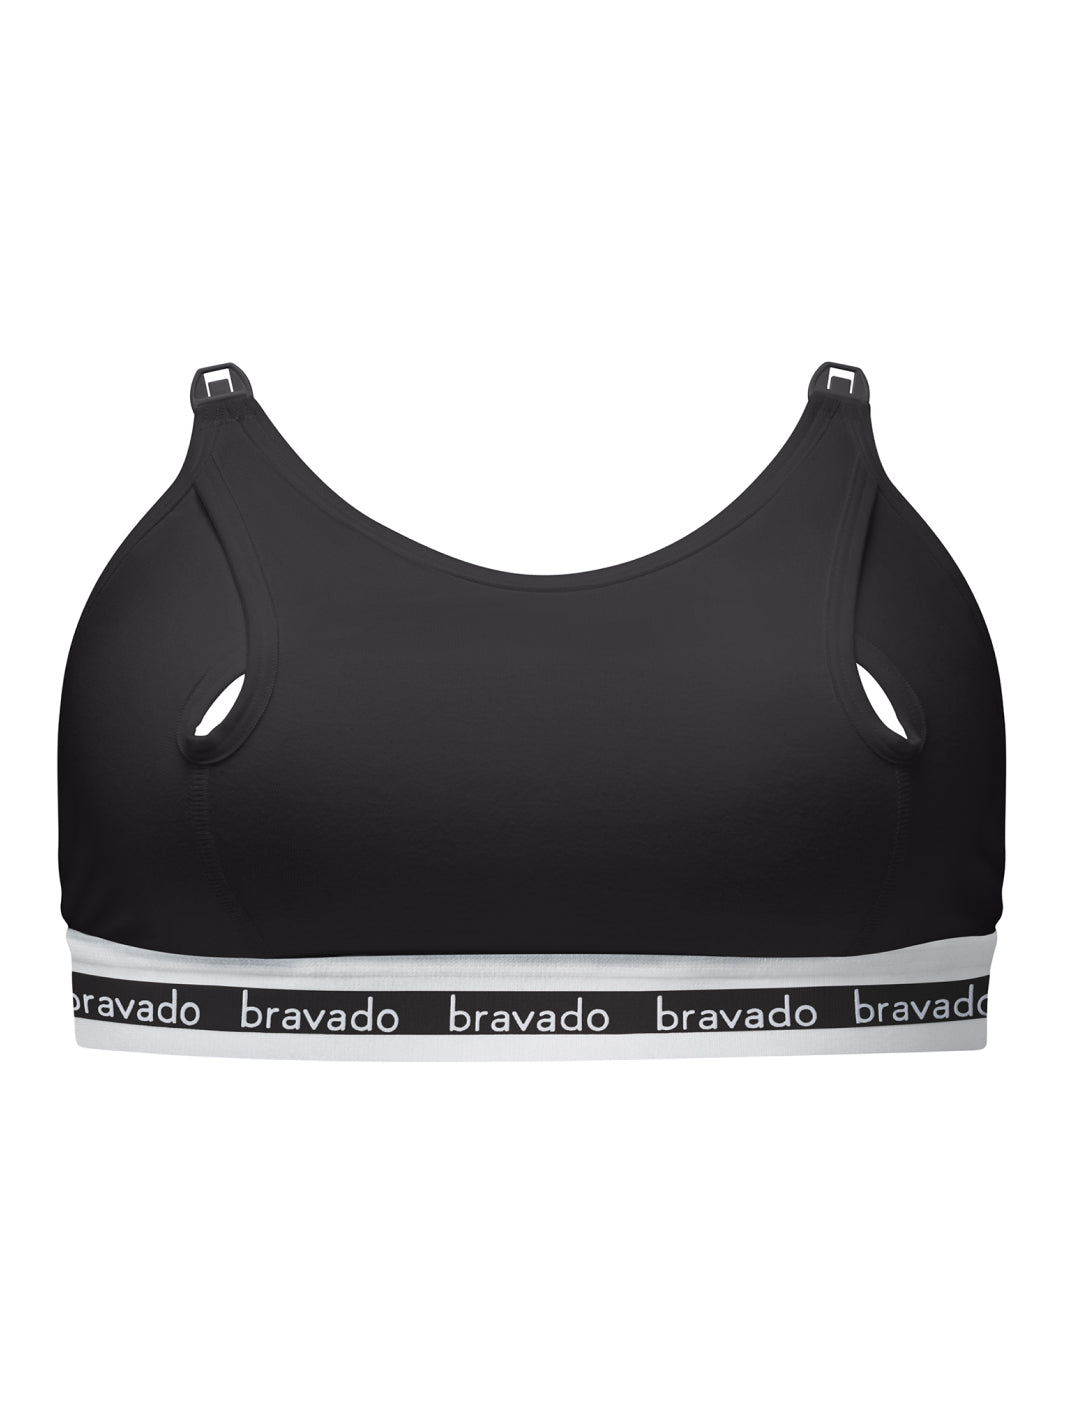 Bravado Clip and Pump Hands-Free Nursing Bra Accessory In Black £23.00 -  Bravado Nursing Bras Free UK Delivery